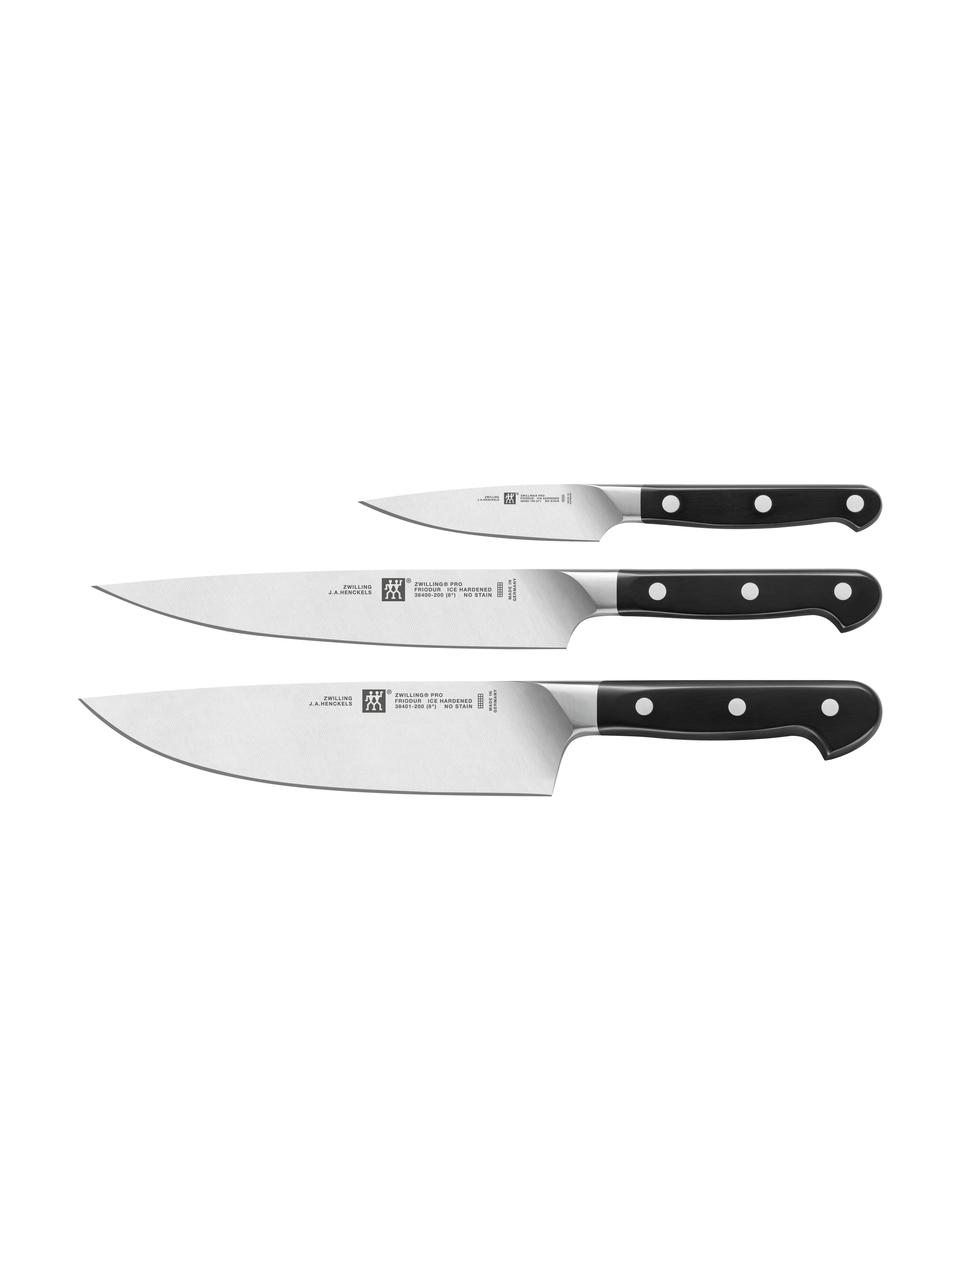 Messer-Set Pro, 3-tlg., Messer: Edelstahl, Griffe: Kunststoff, Silberfarben, Set mit verschiedenen Größen